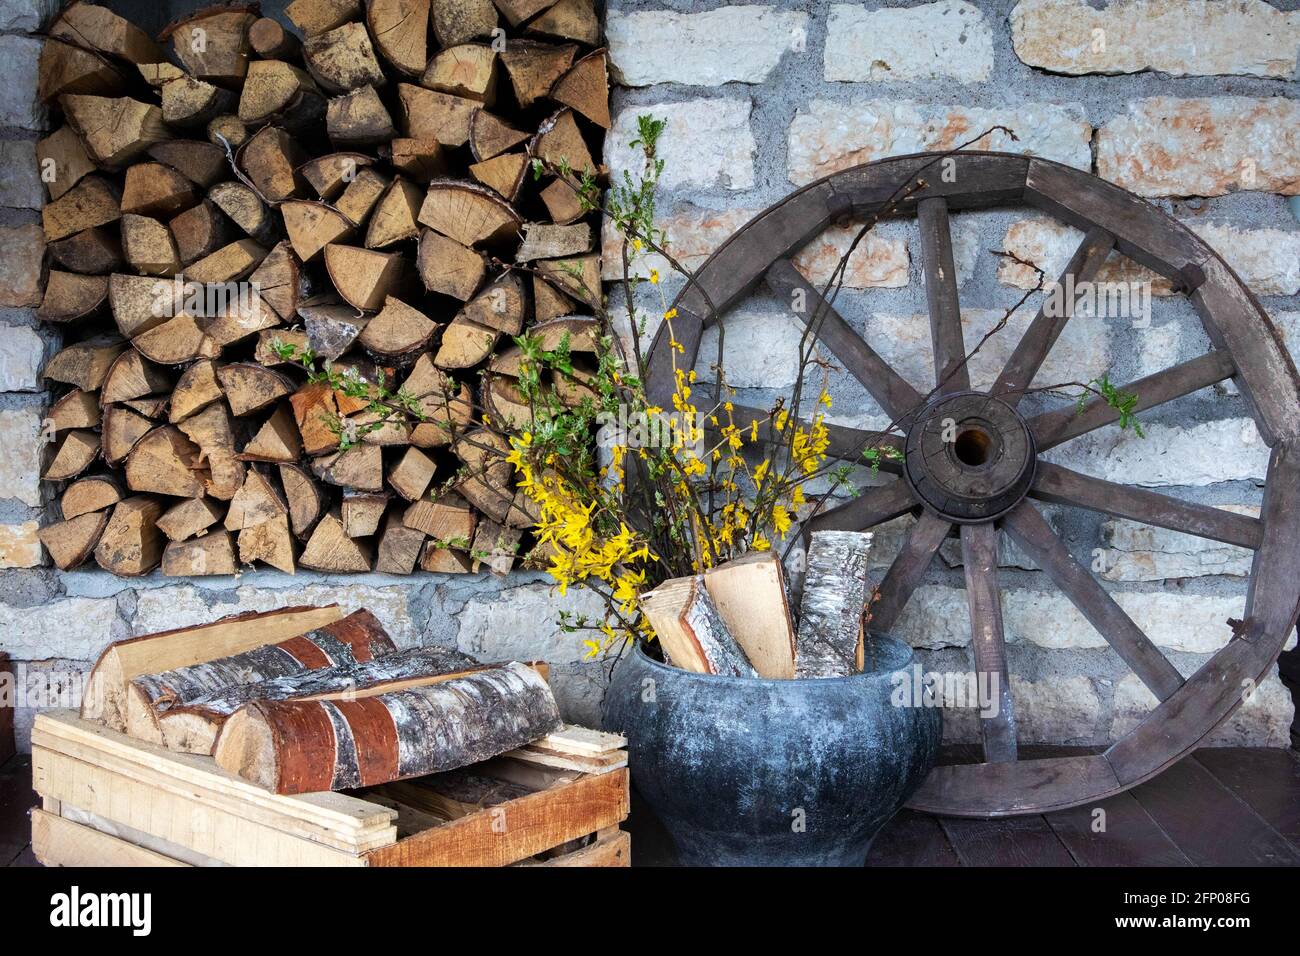 Accessori villaggio, scenario rurale decorativo con vecchia ruota dentata, pila di legna fuoco e vecchia pentola con fiori gialli Foto Stock